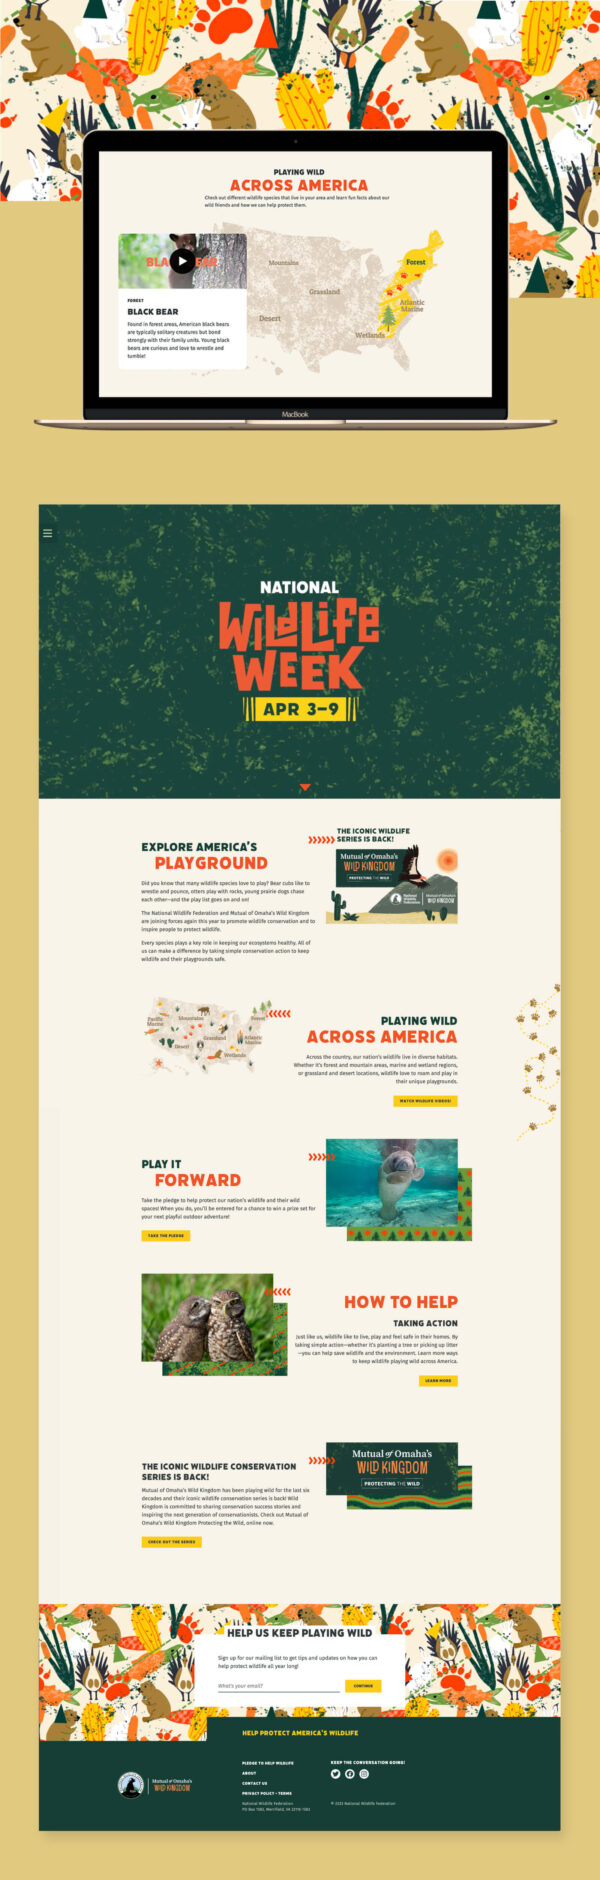 National Wildlife Week website